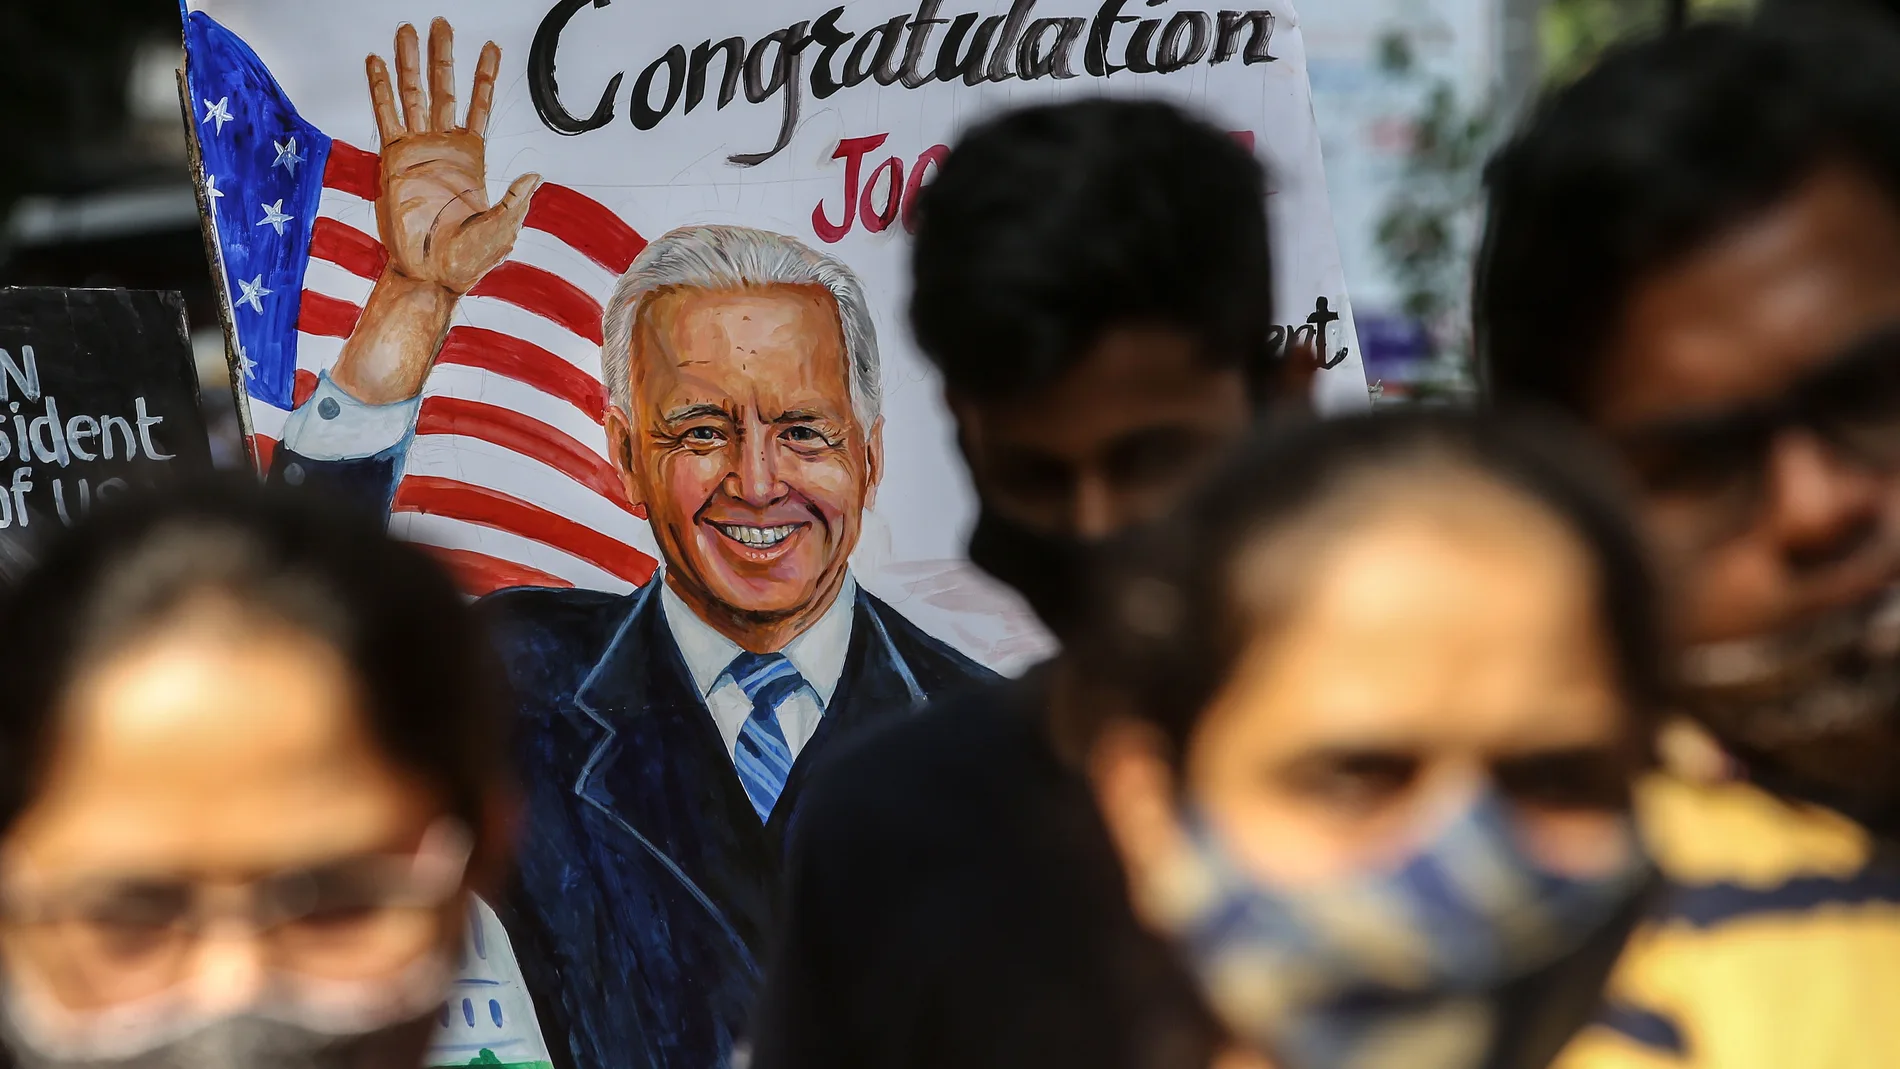 El candidato del Partido Demócrata, Joe Biden, ha ganado las elecciones presidenciales de Estados Unidos